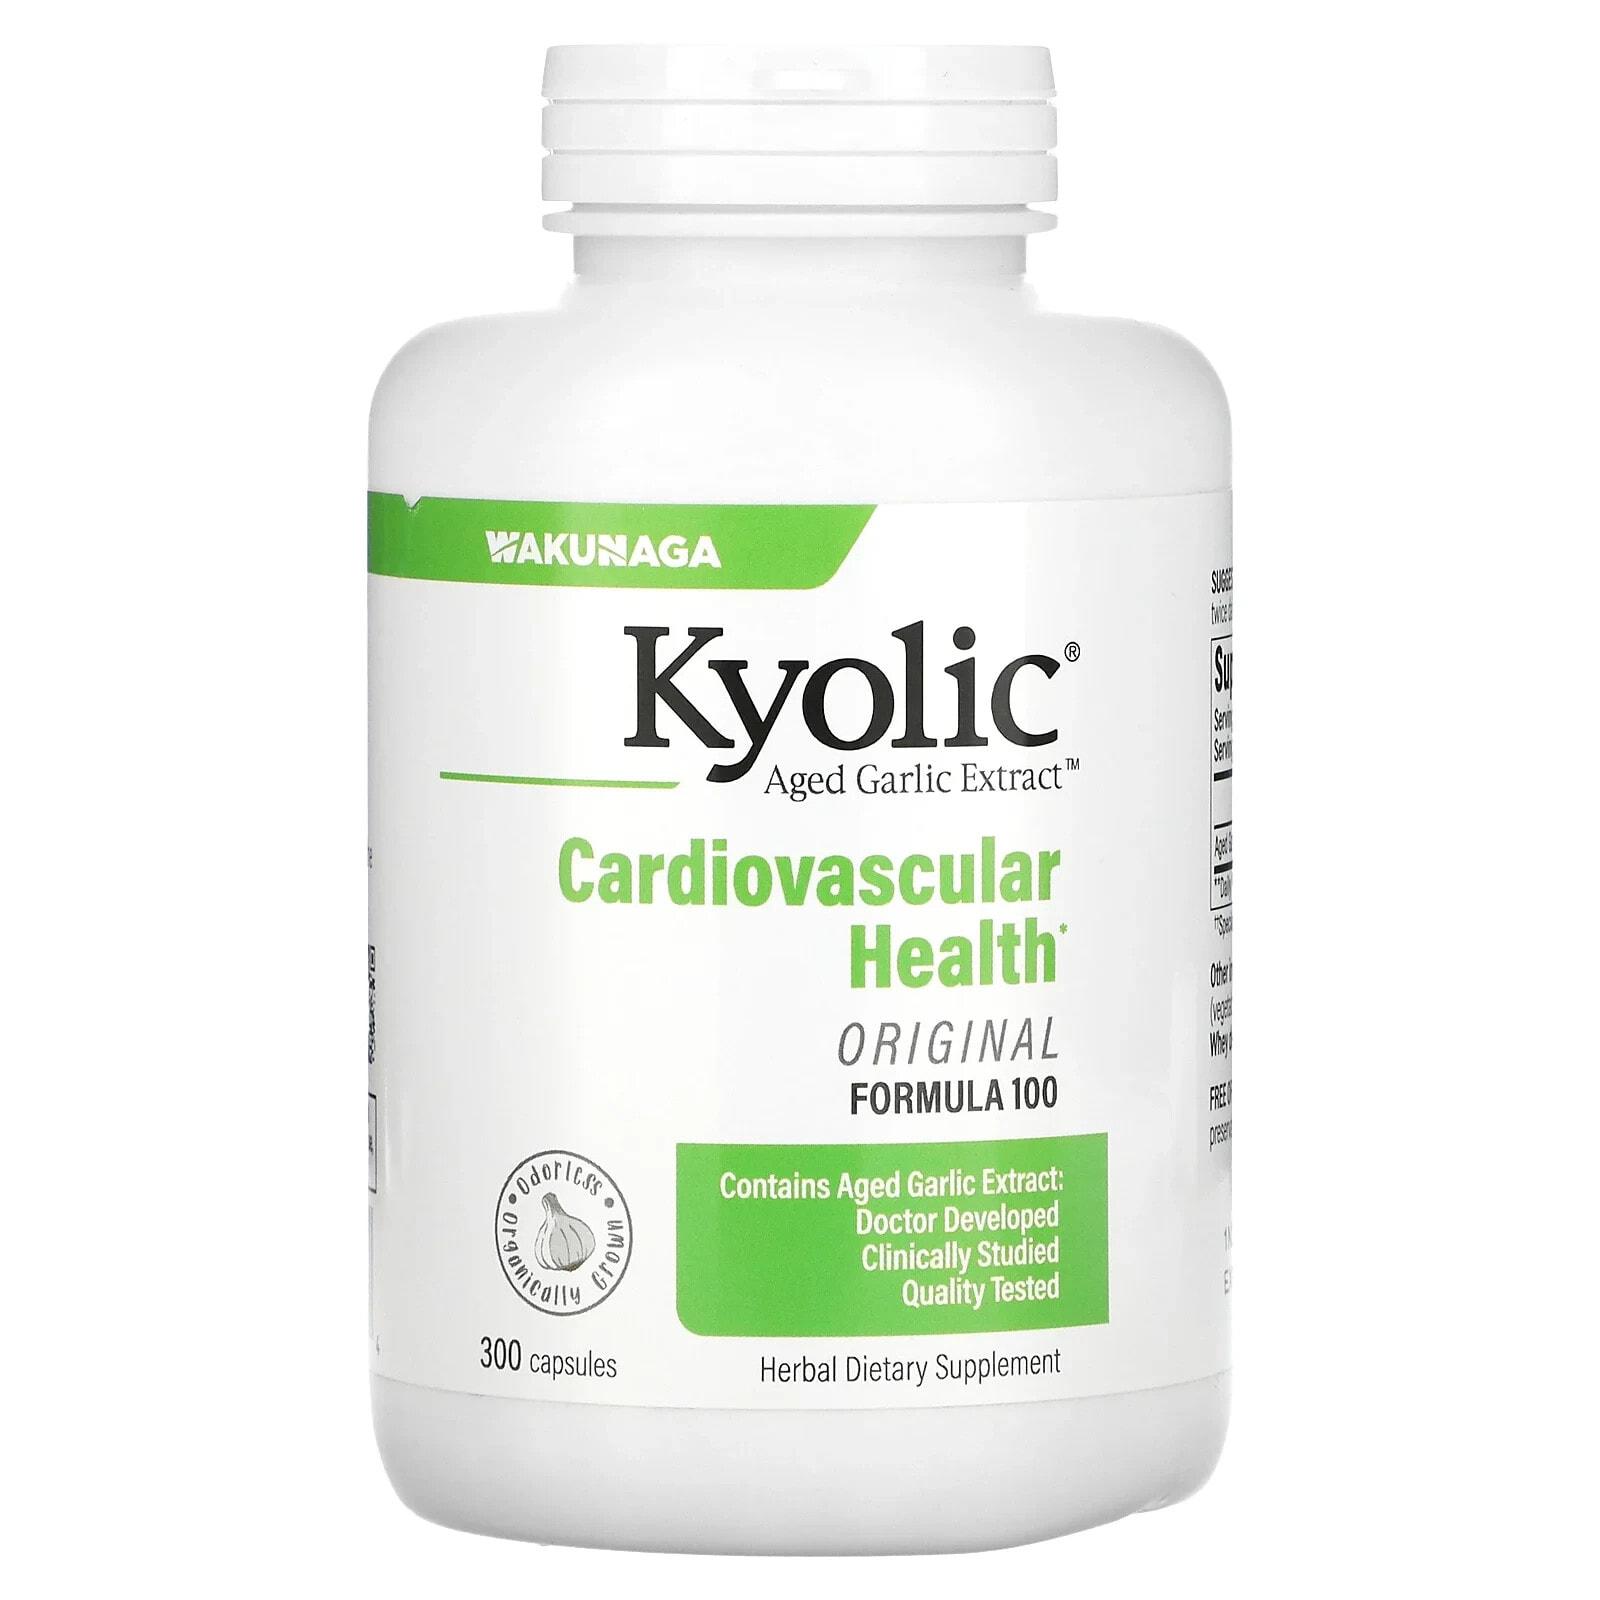 Kyolic, Aged Garlic Extract, выдержанный экстракт чеснока, для сердечно-сосудистой системы, формула 100, 300 капсул